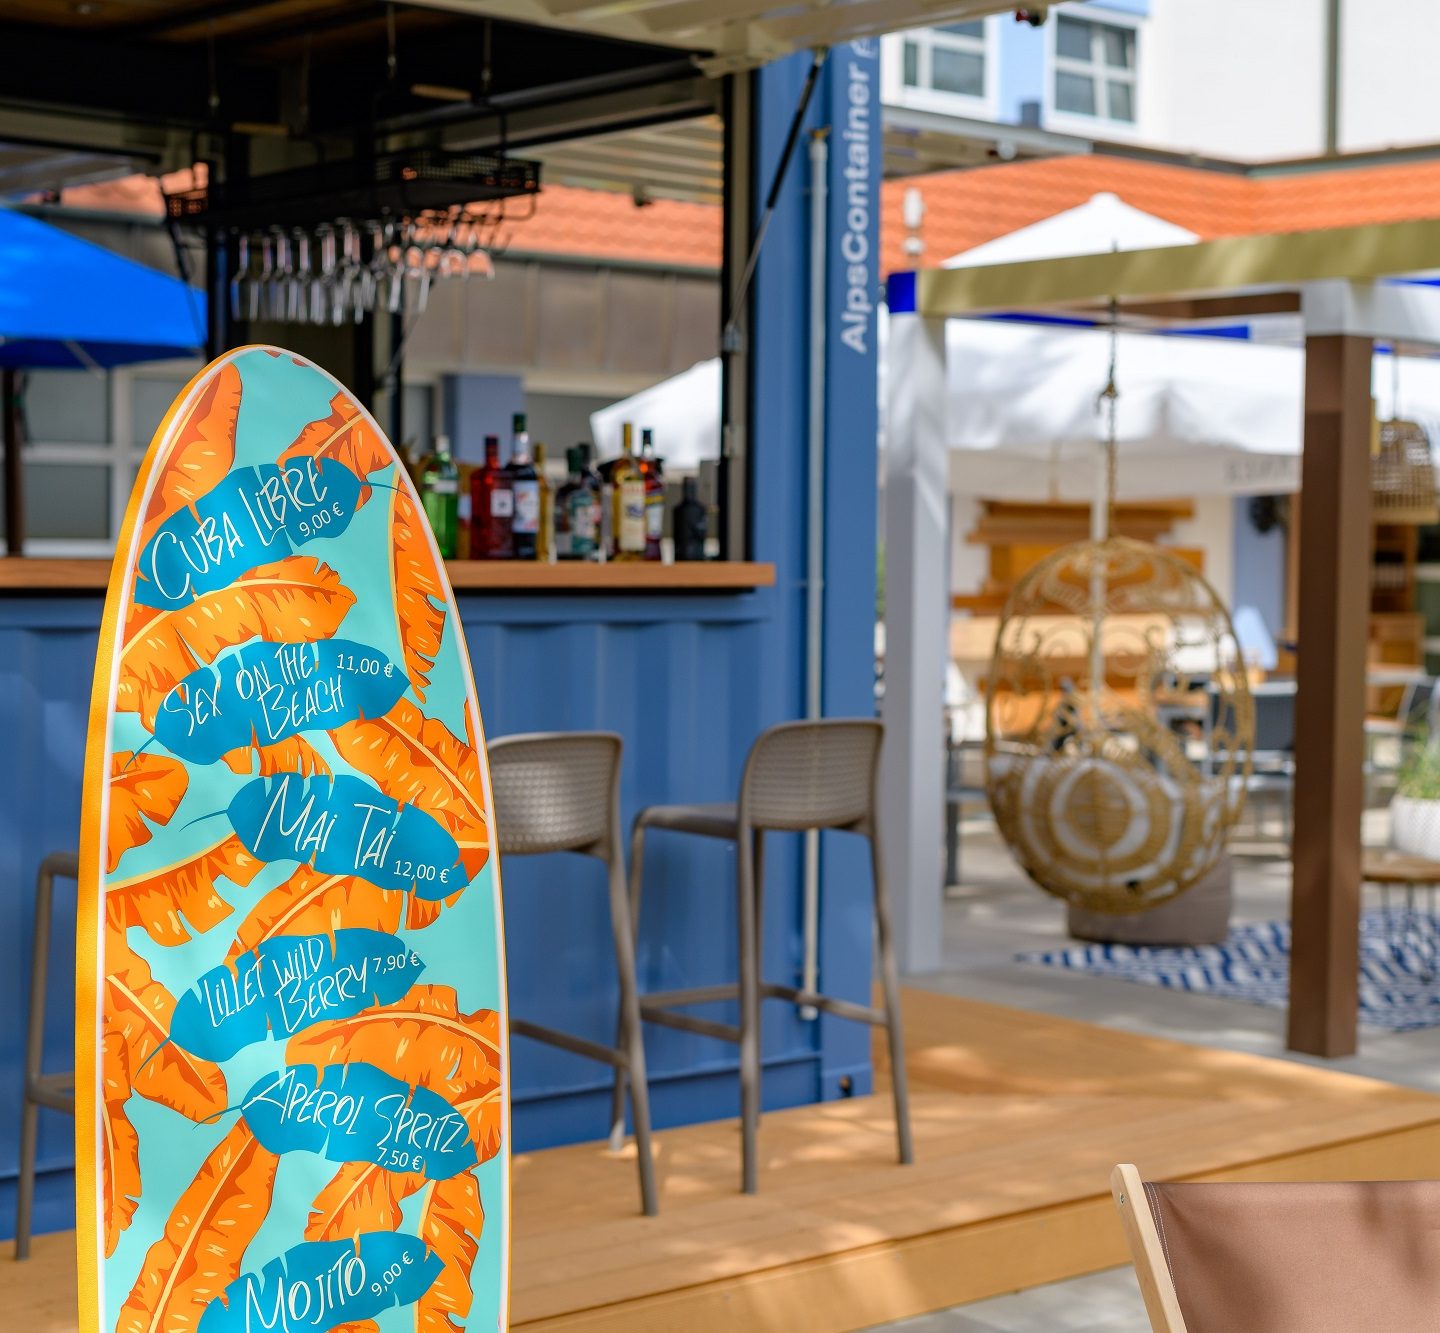 Einfach entspannt: ibis Styles Regensburg feiert „Volare Beach Bar & Restaurant“-Eröffnung